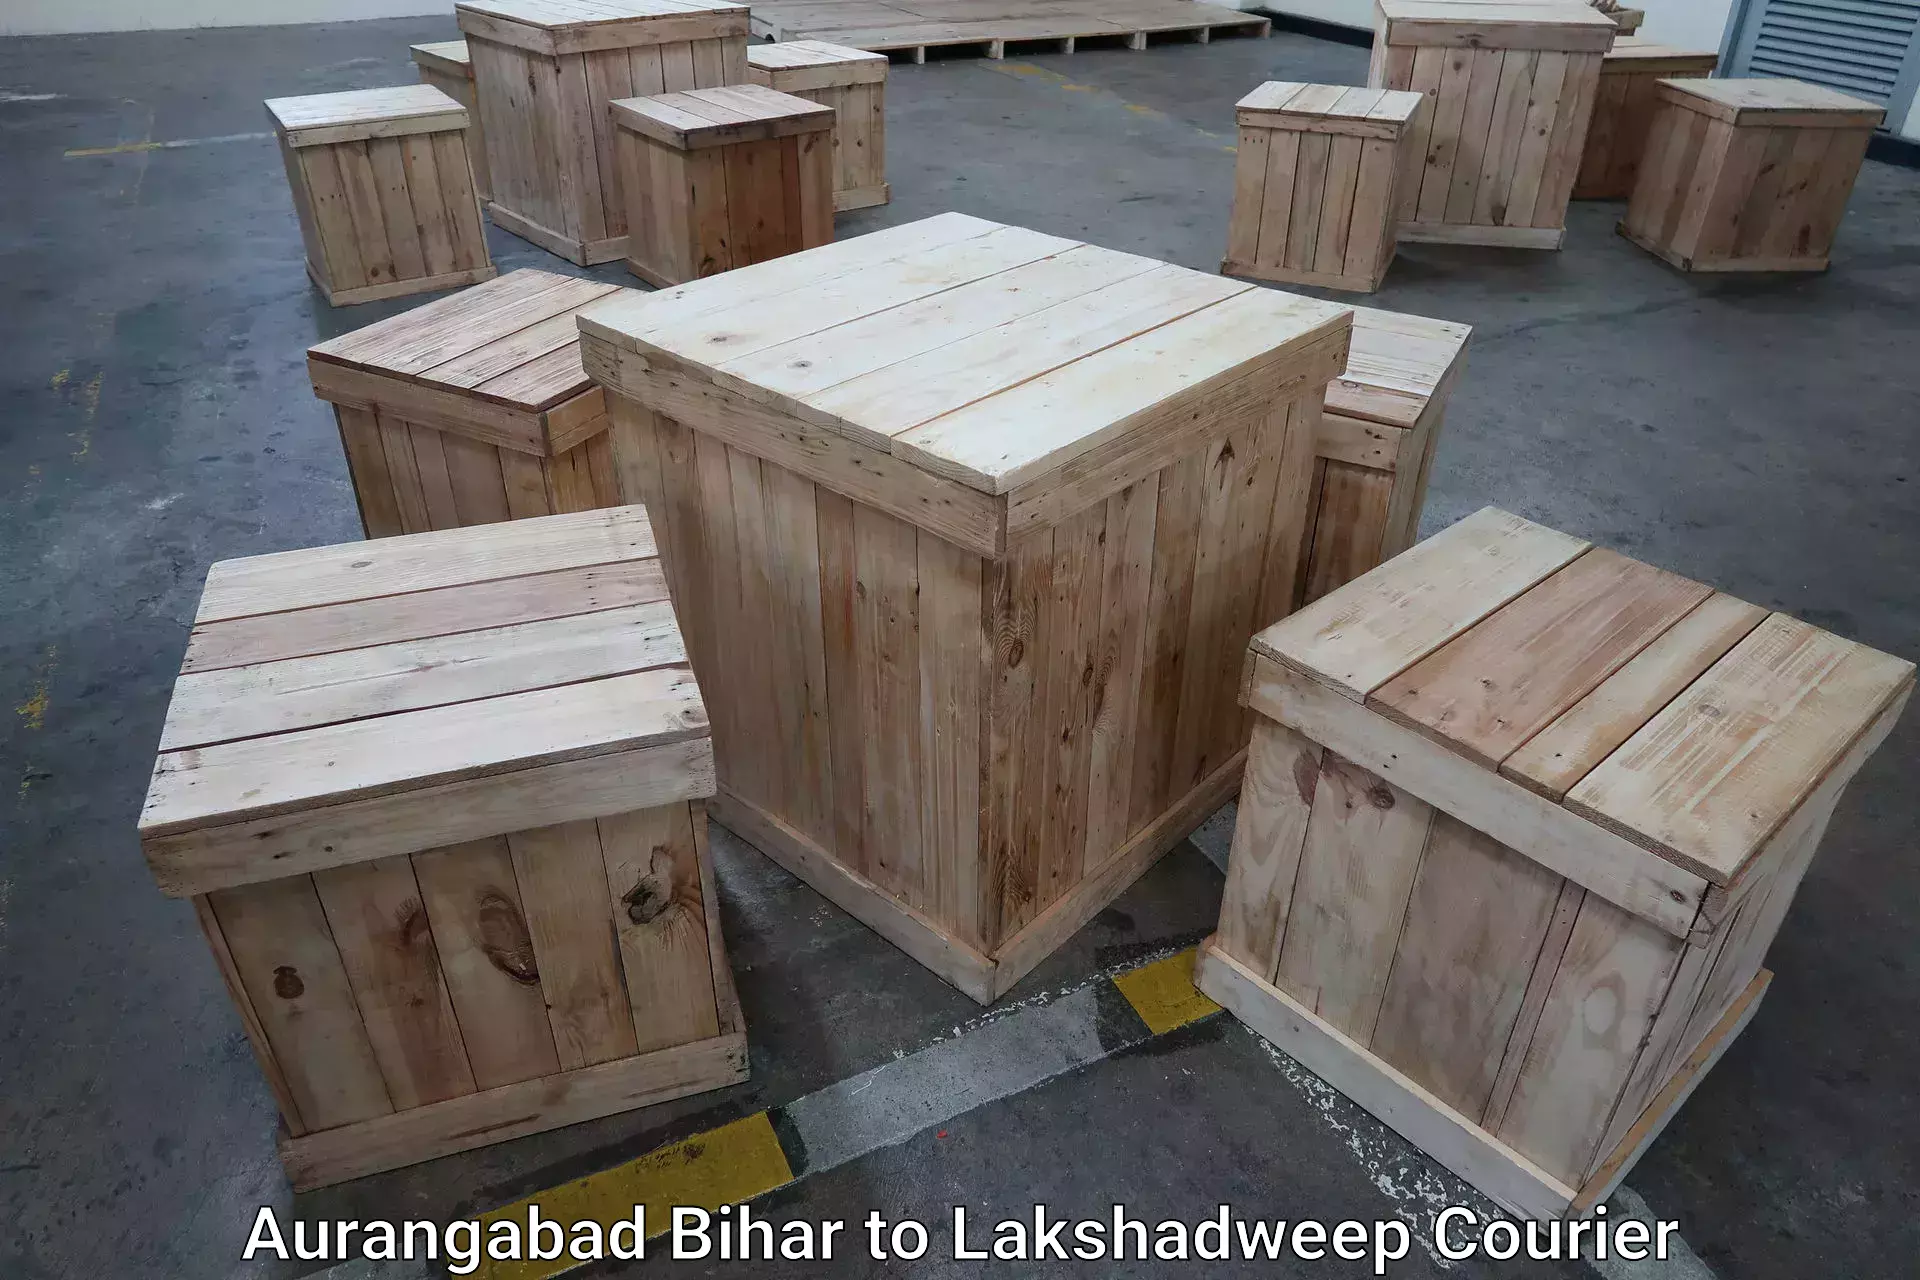 Baggage shipping calculator Aurangabad Bihar to Lakshadweep